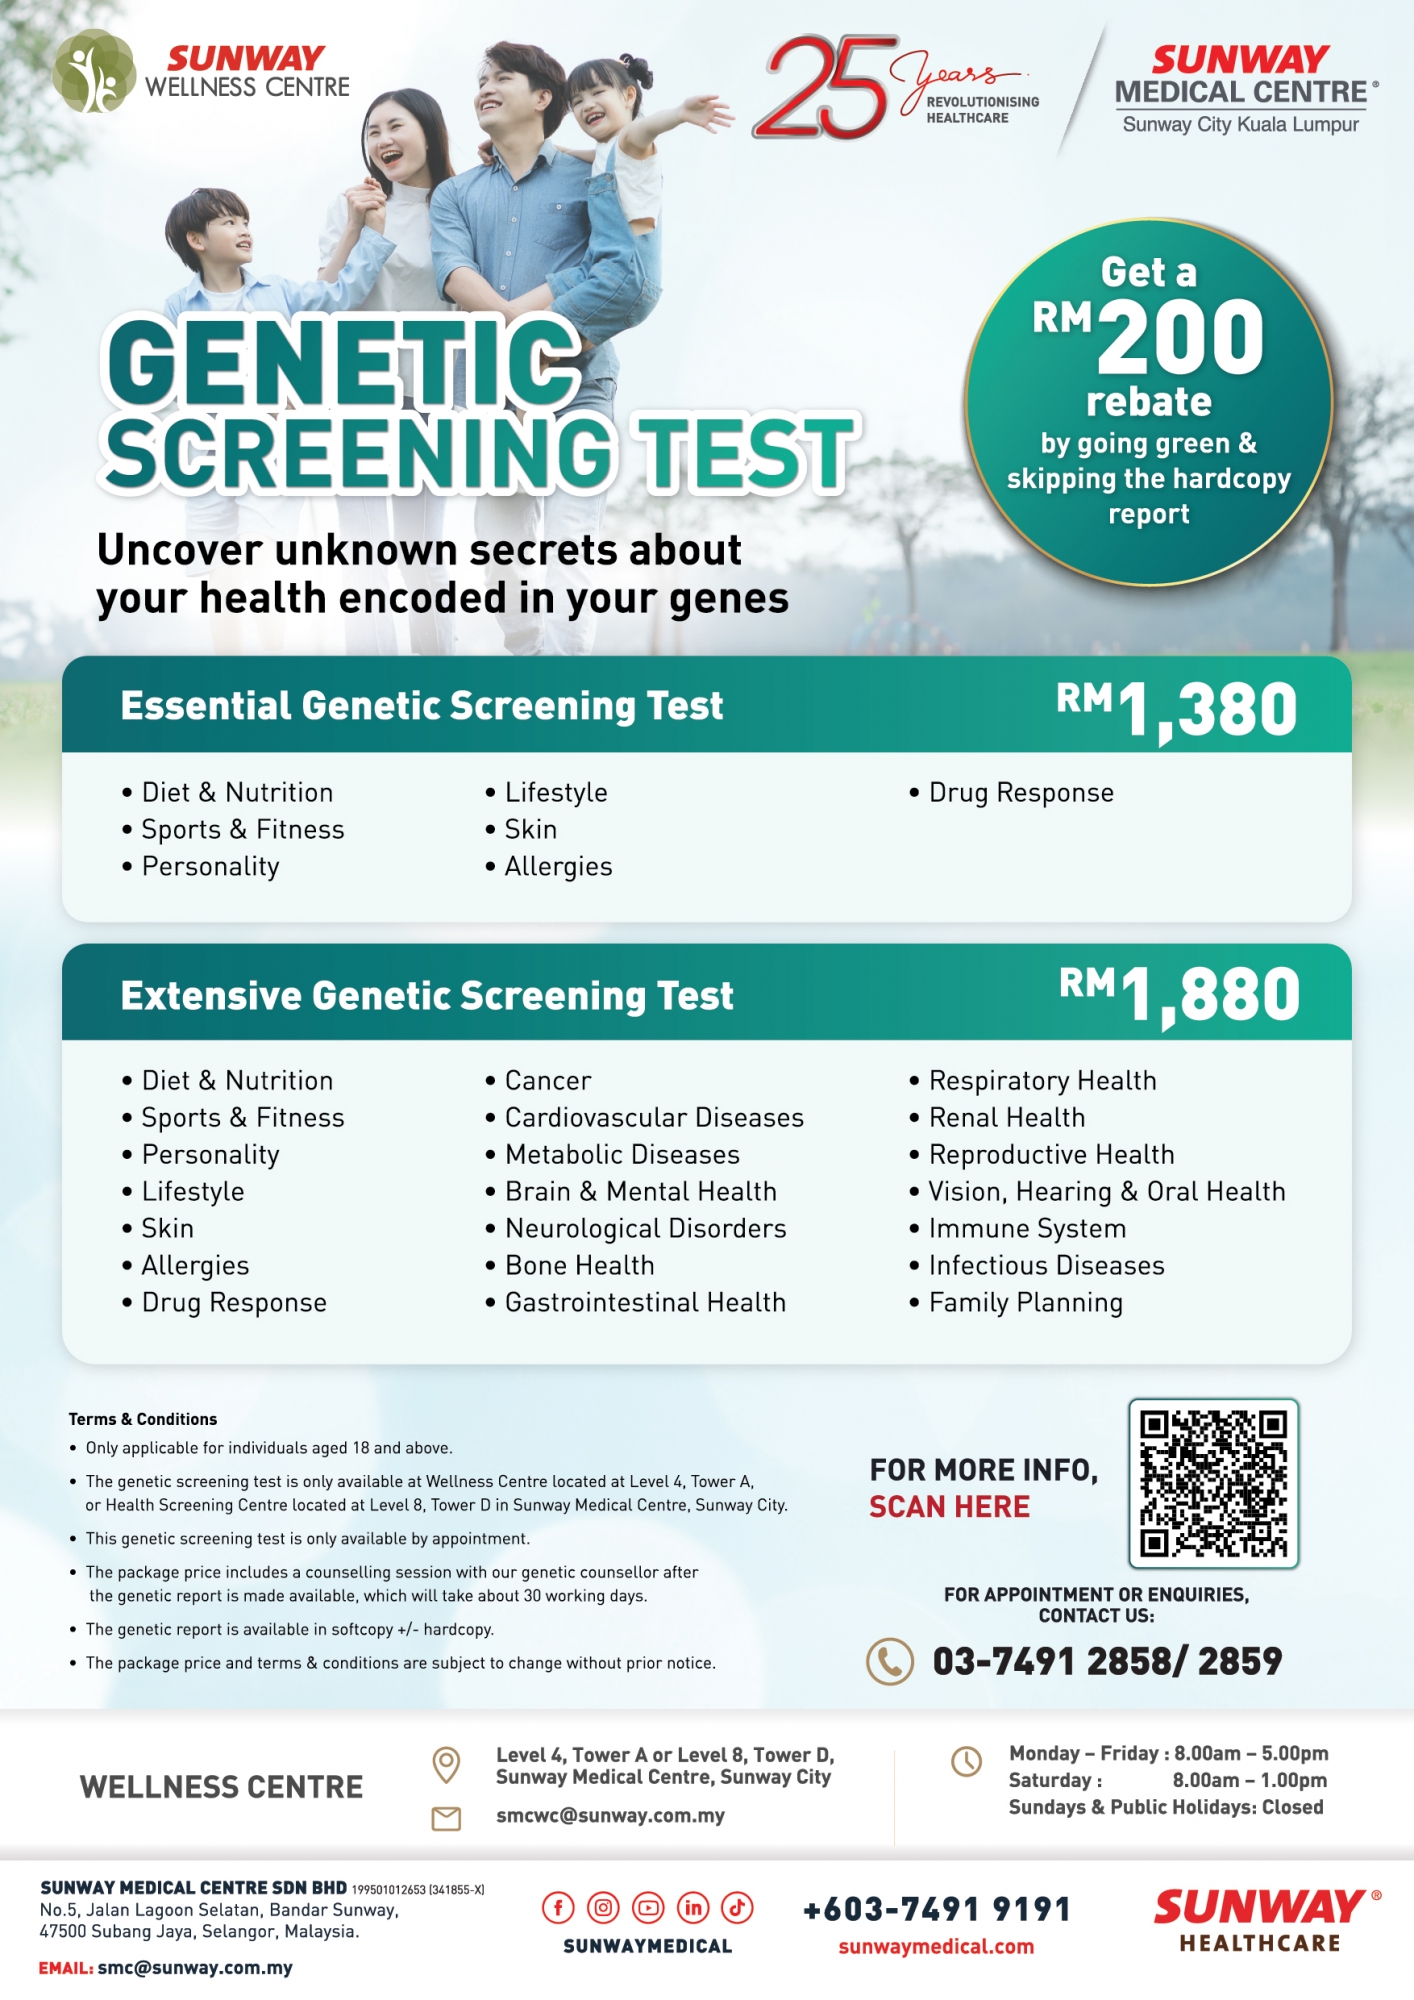 基因筛查测试